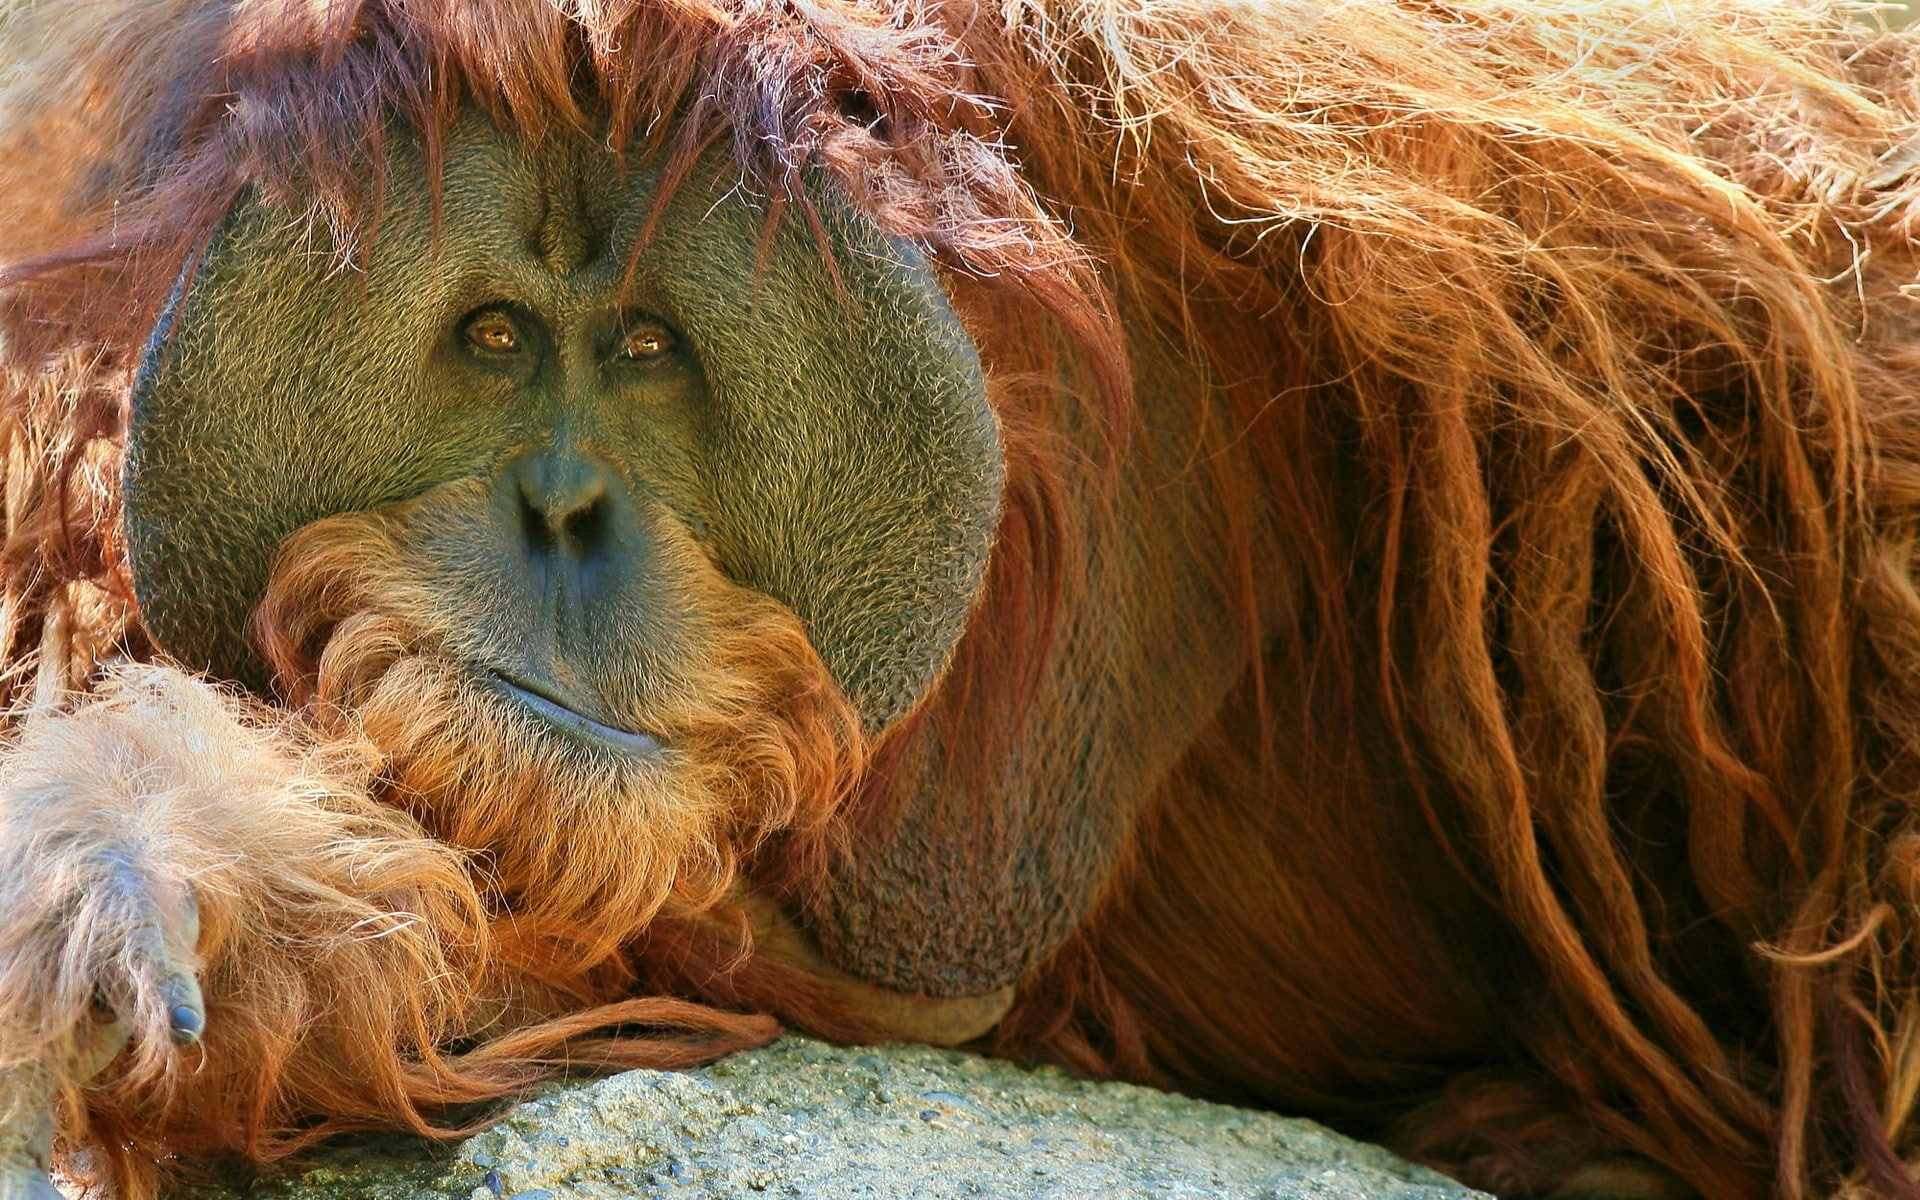 Orangutan, Monkey, Pensive